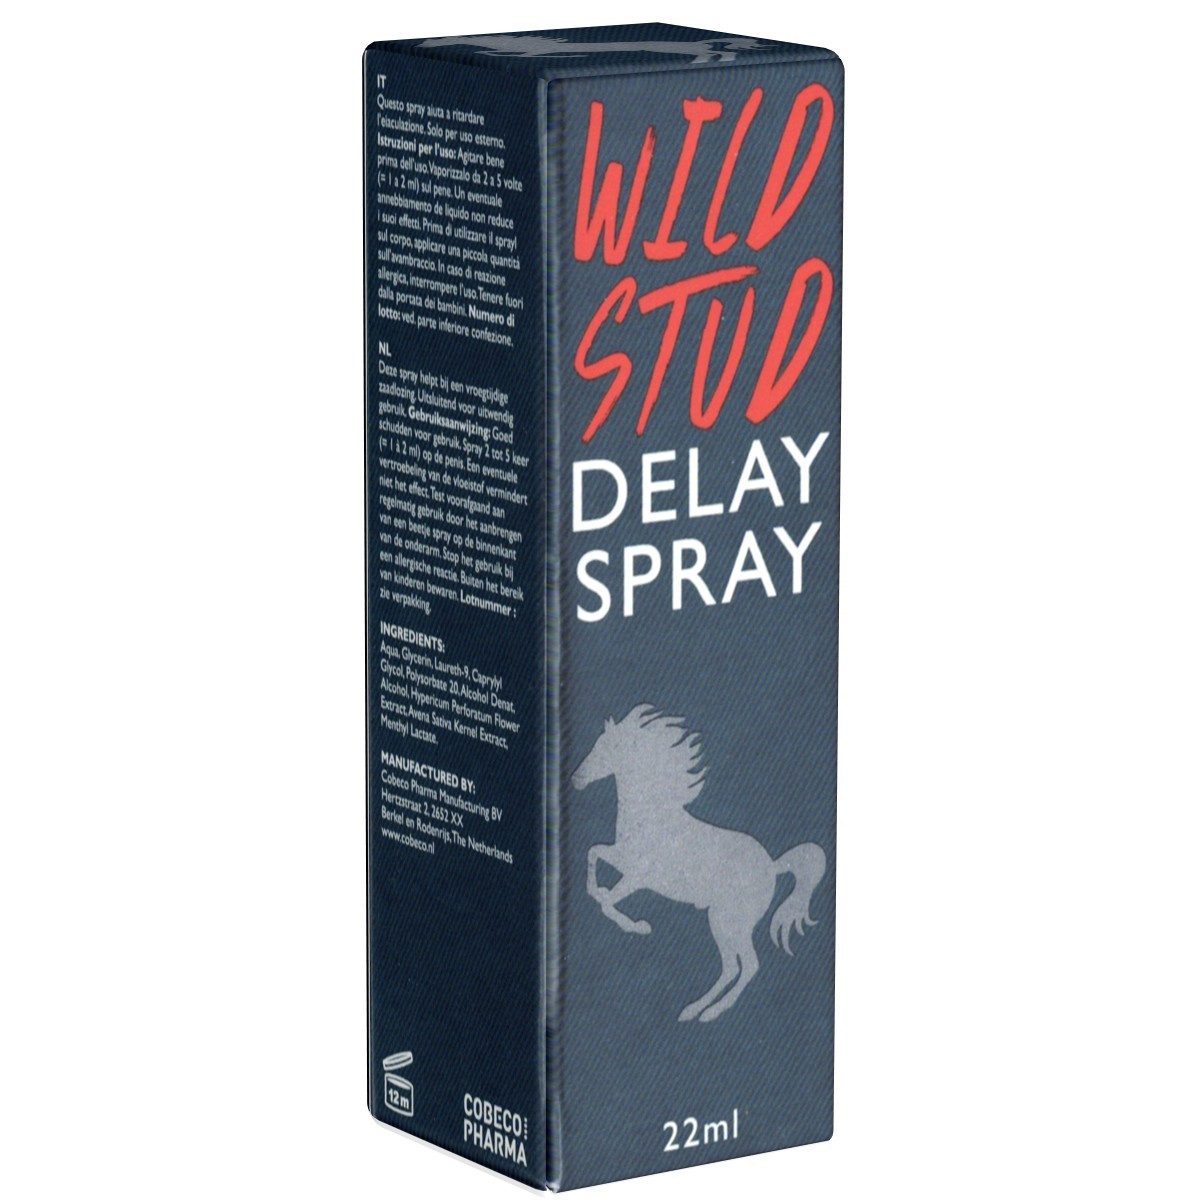 Cobeco Pharma Verzögerungsmittel Wild Stud Delay Spray, Flasche mit 22ml, 1-tlg., verzögerndes Spray gegen frühzeitige Ejakulation